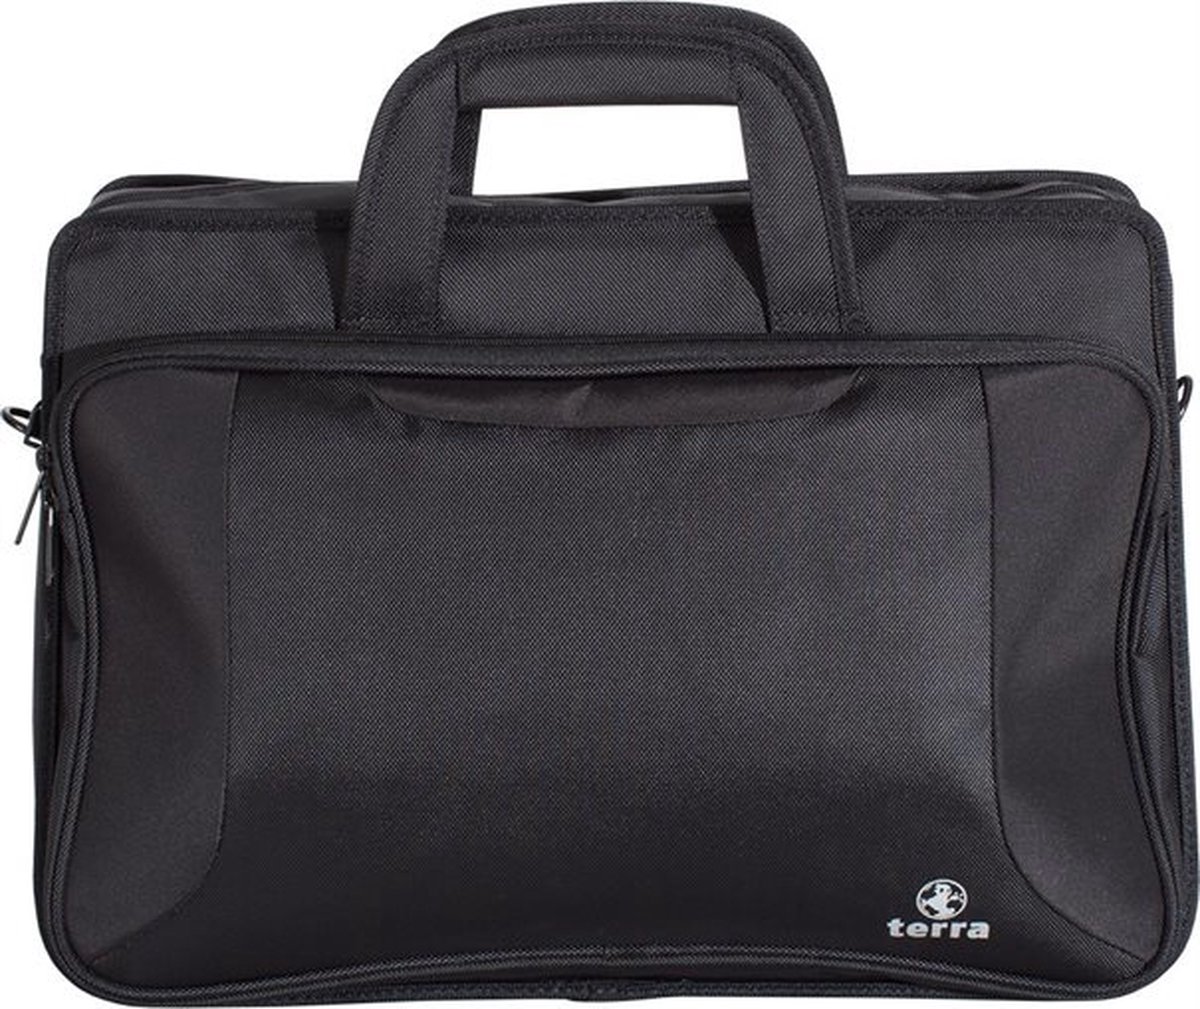 Bag TERRA PRO817 voor laptops up to 17.3